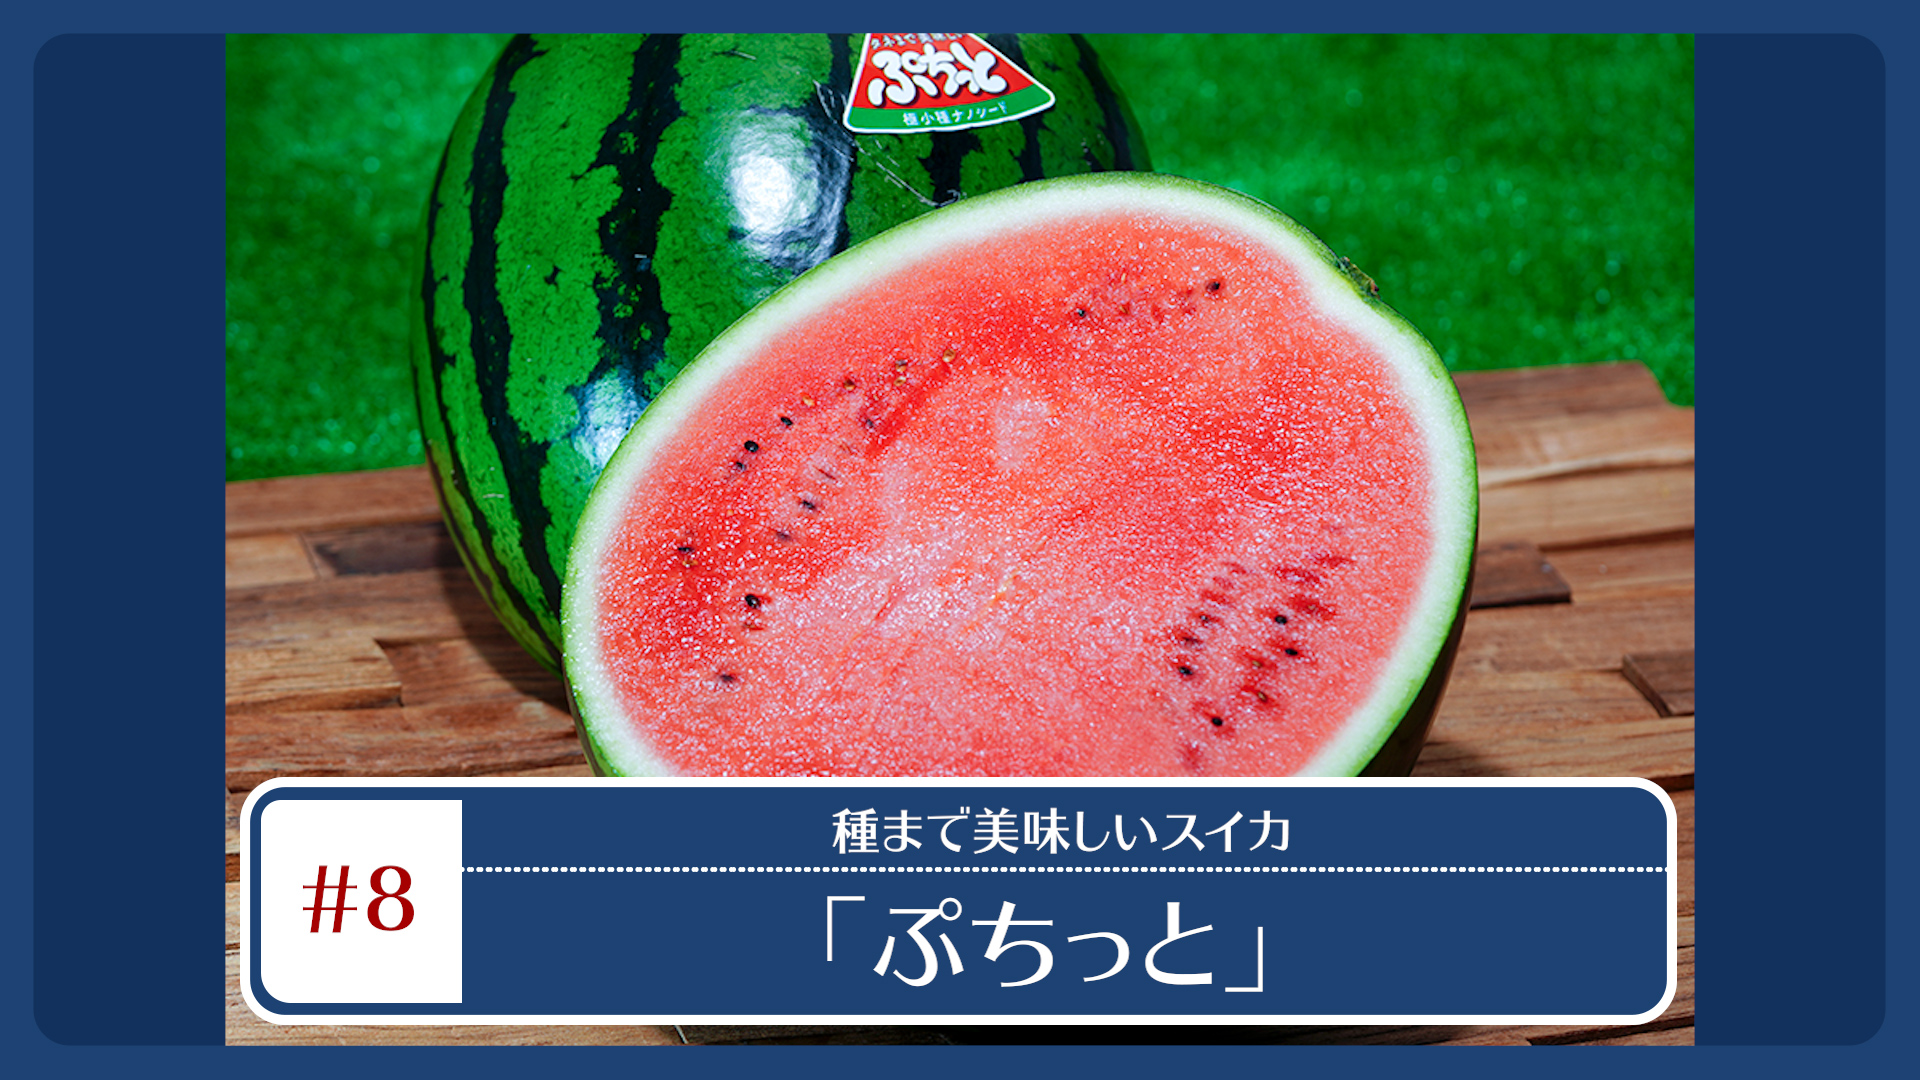 奈良・萩原農場が開発した最新品種のスイカ -タネまで美味しい「ぷちっと」- 各種ECサイトにて販売中！